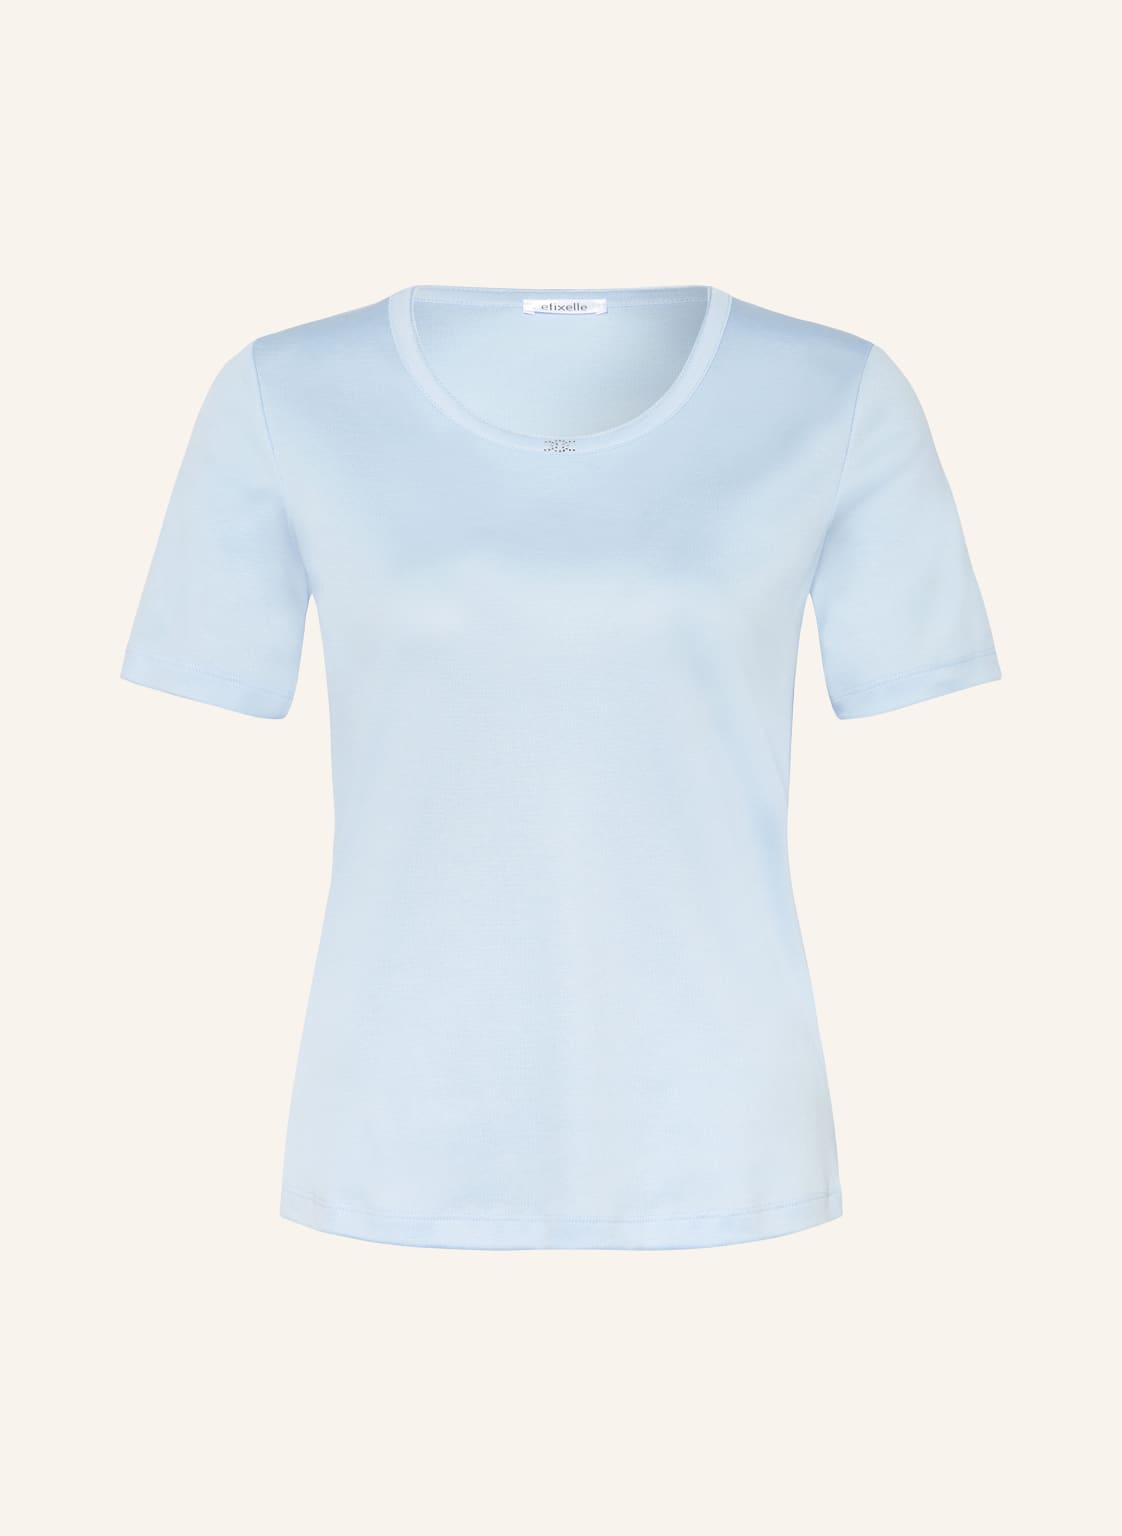 Efixelle T-Shirt Mit Schmucksteinen blau von efixelle